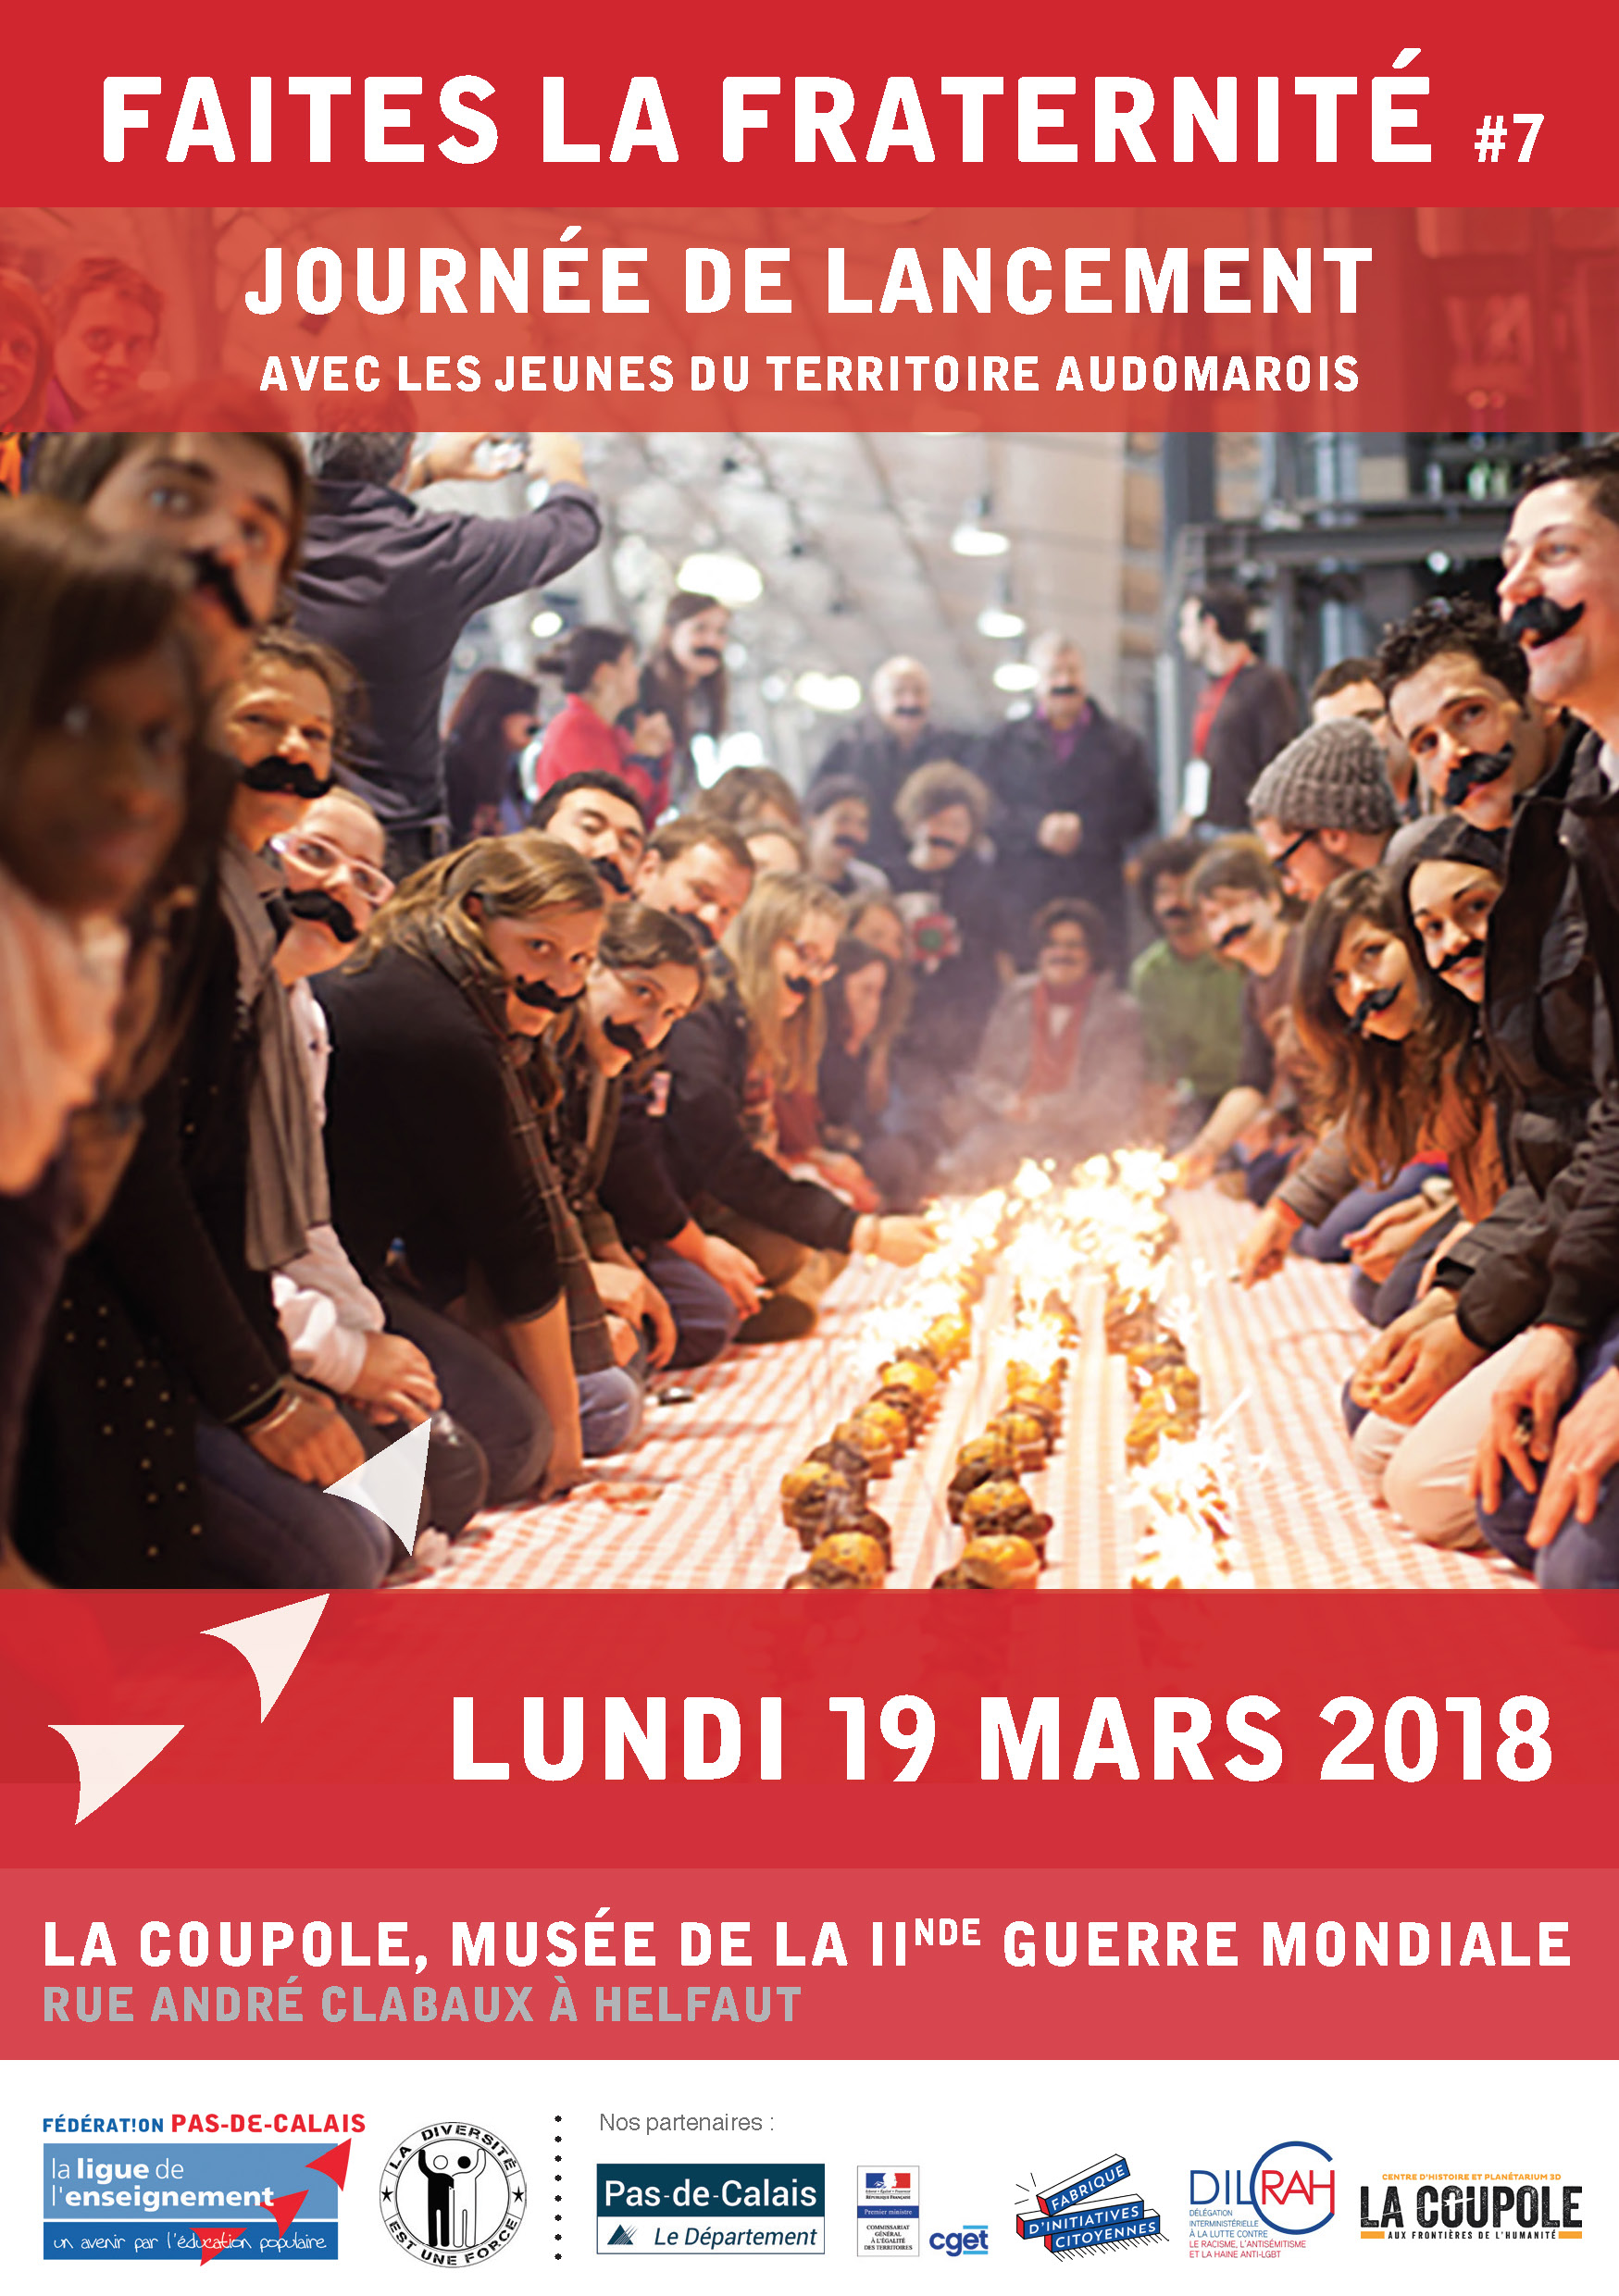 Invitation 19 mars_Journée de lancement Faites la Fraternité 2018_Page_1